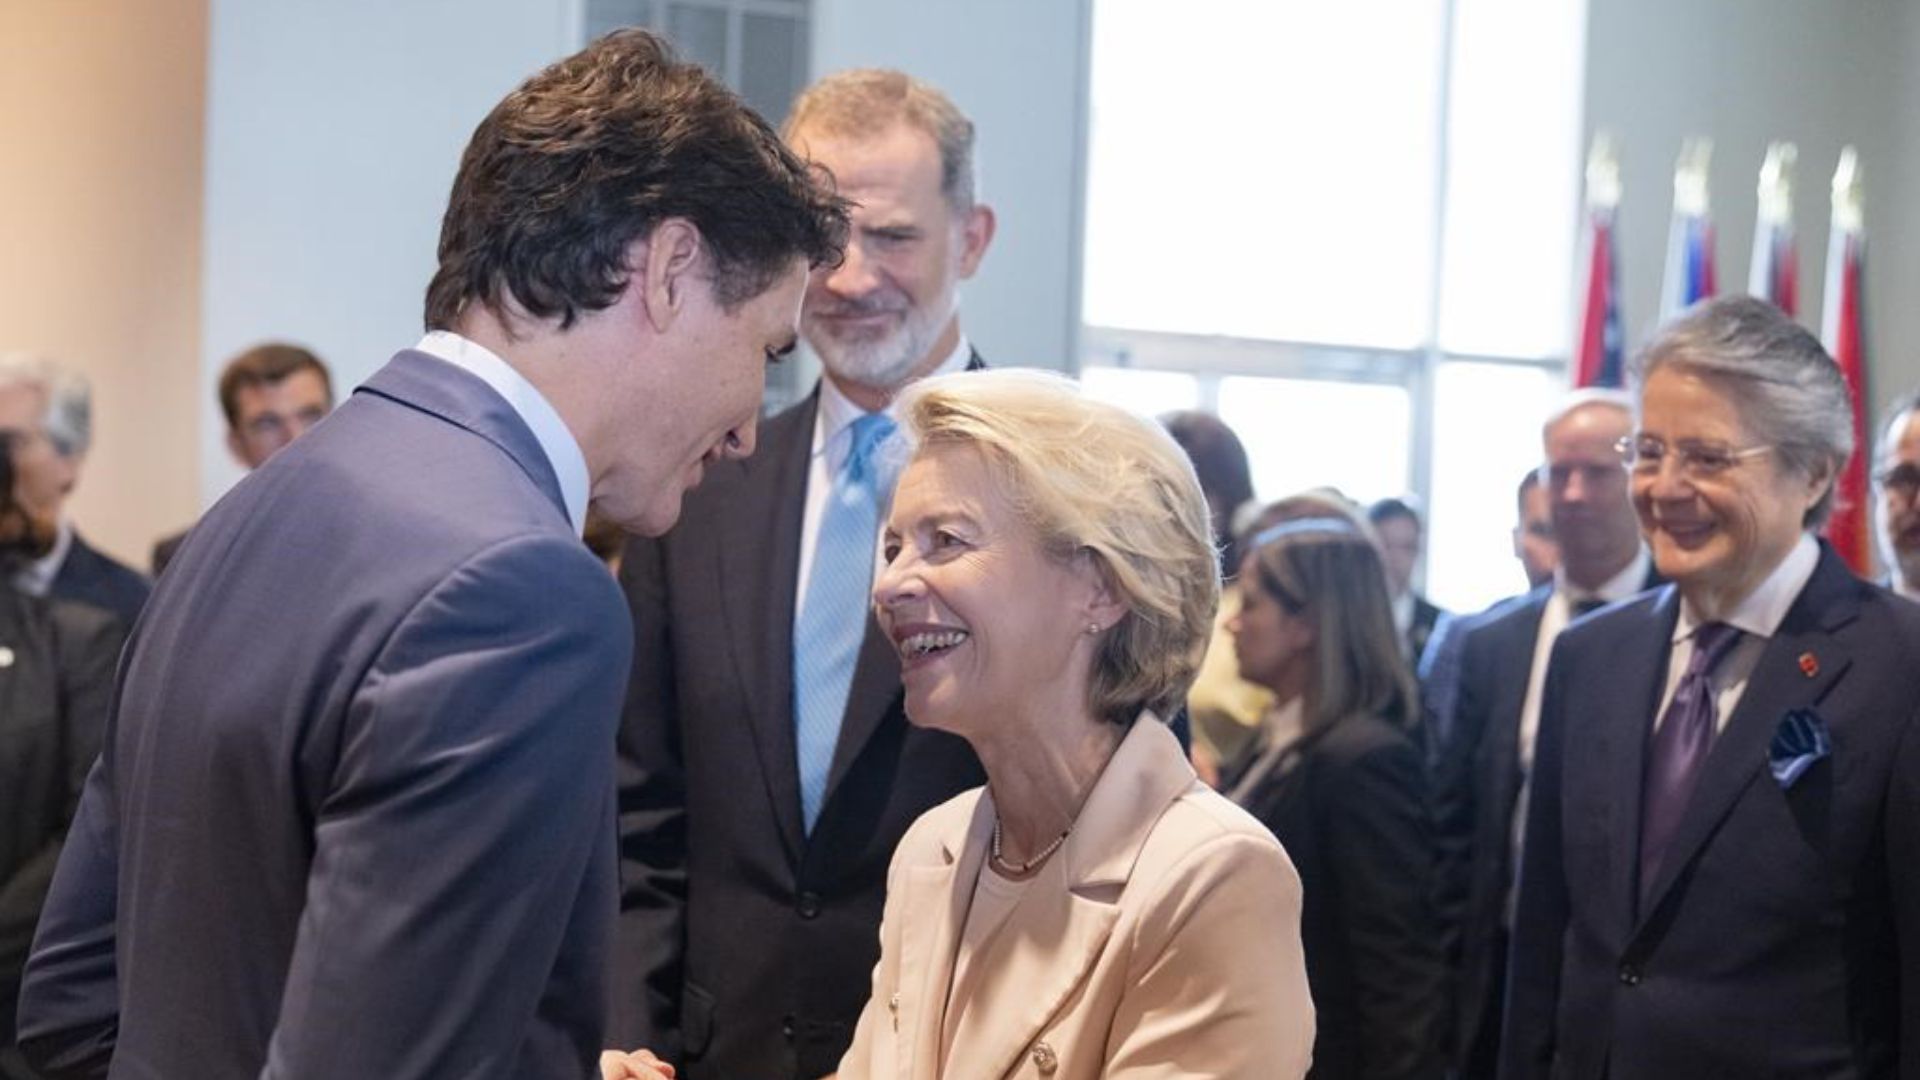 Justin Trudeau a fait l'éloge de la Commission européenne et de sa première femme présidente en remettant à Ursula von der Leyen l'équivalent judiciaire du prix Nobel de la paix.